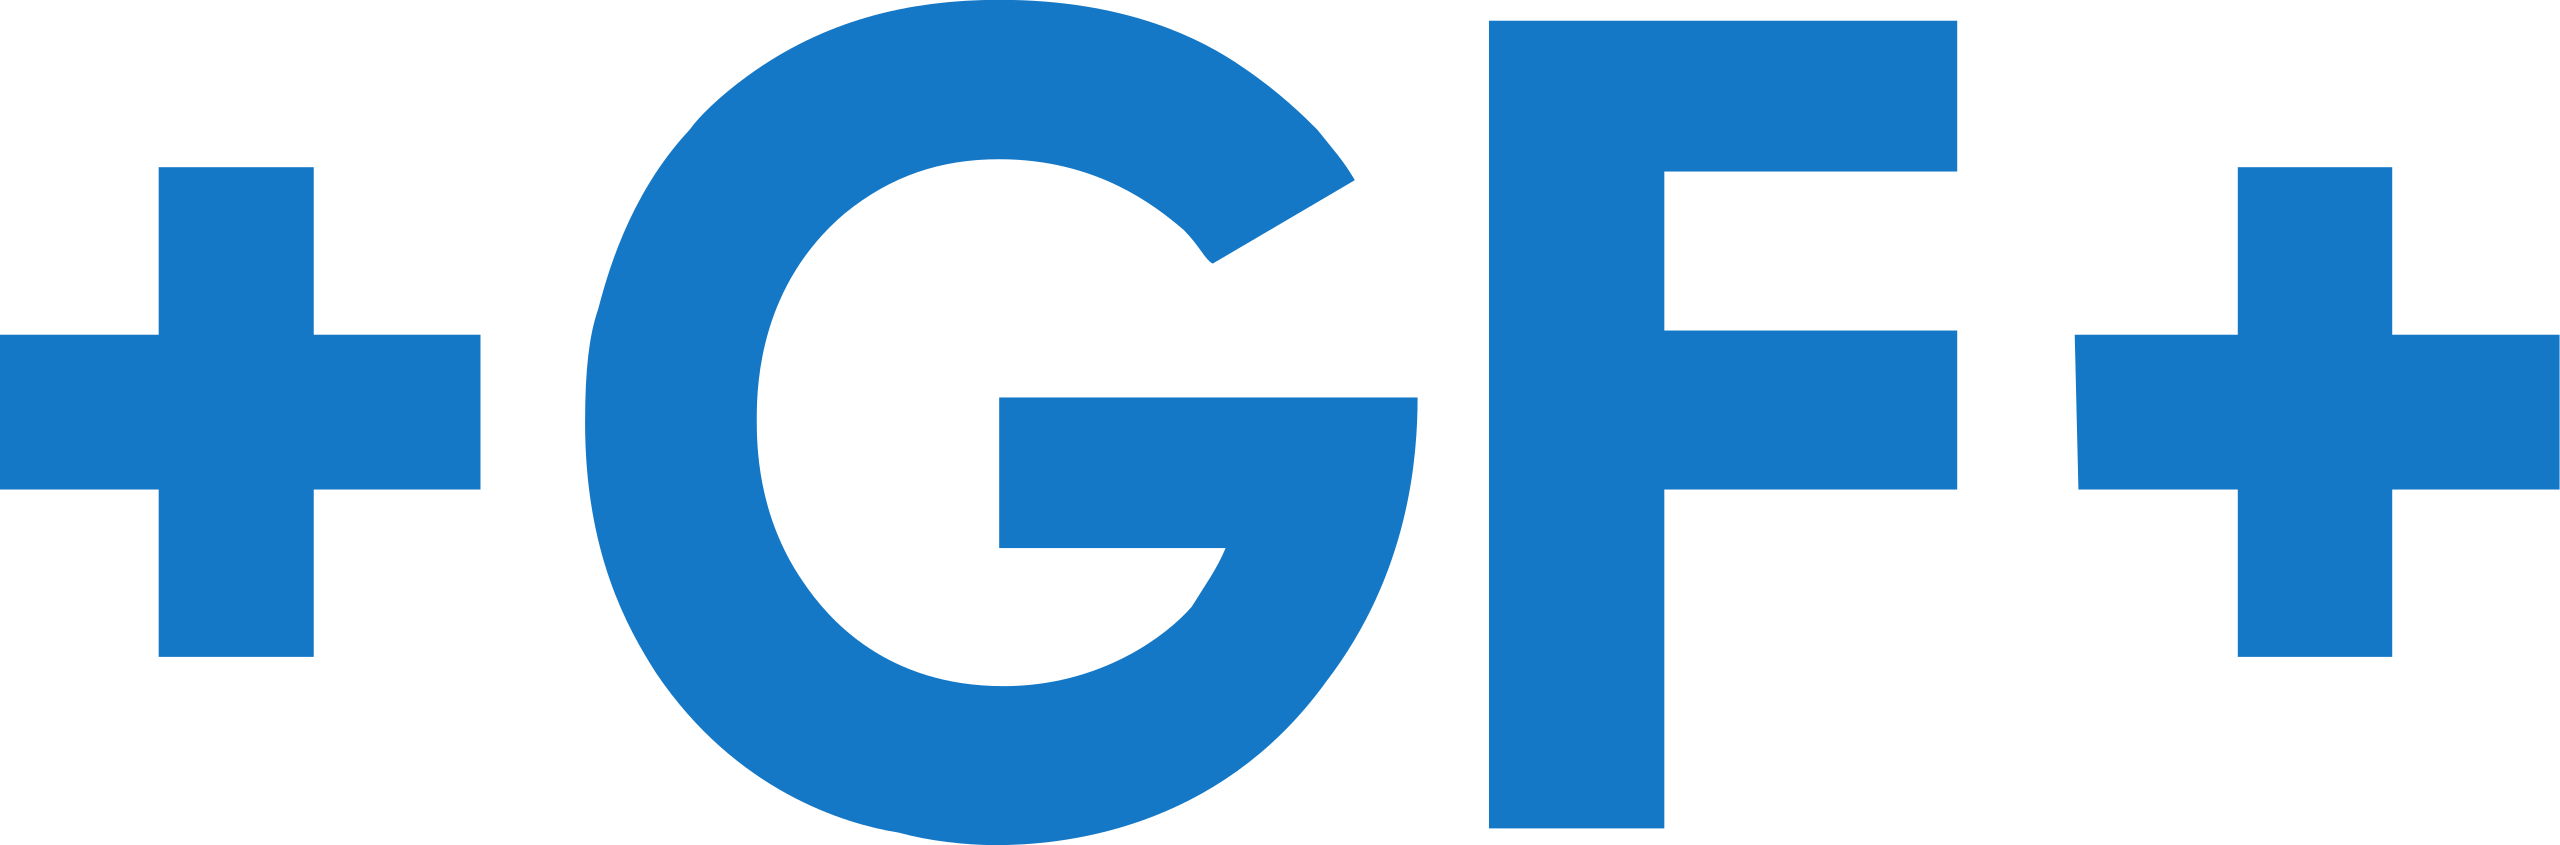 Georg_Fischer_logo.svg